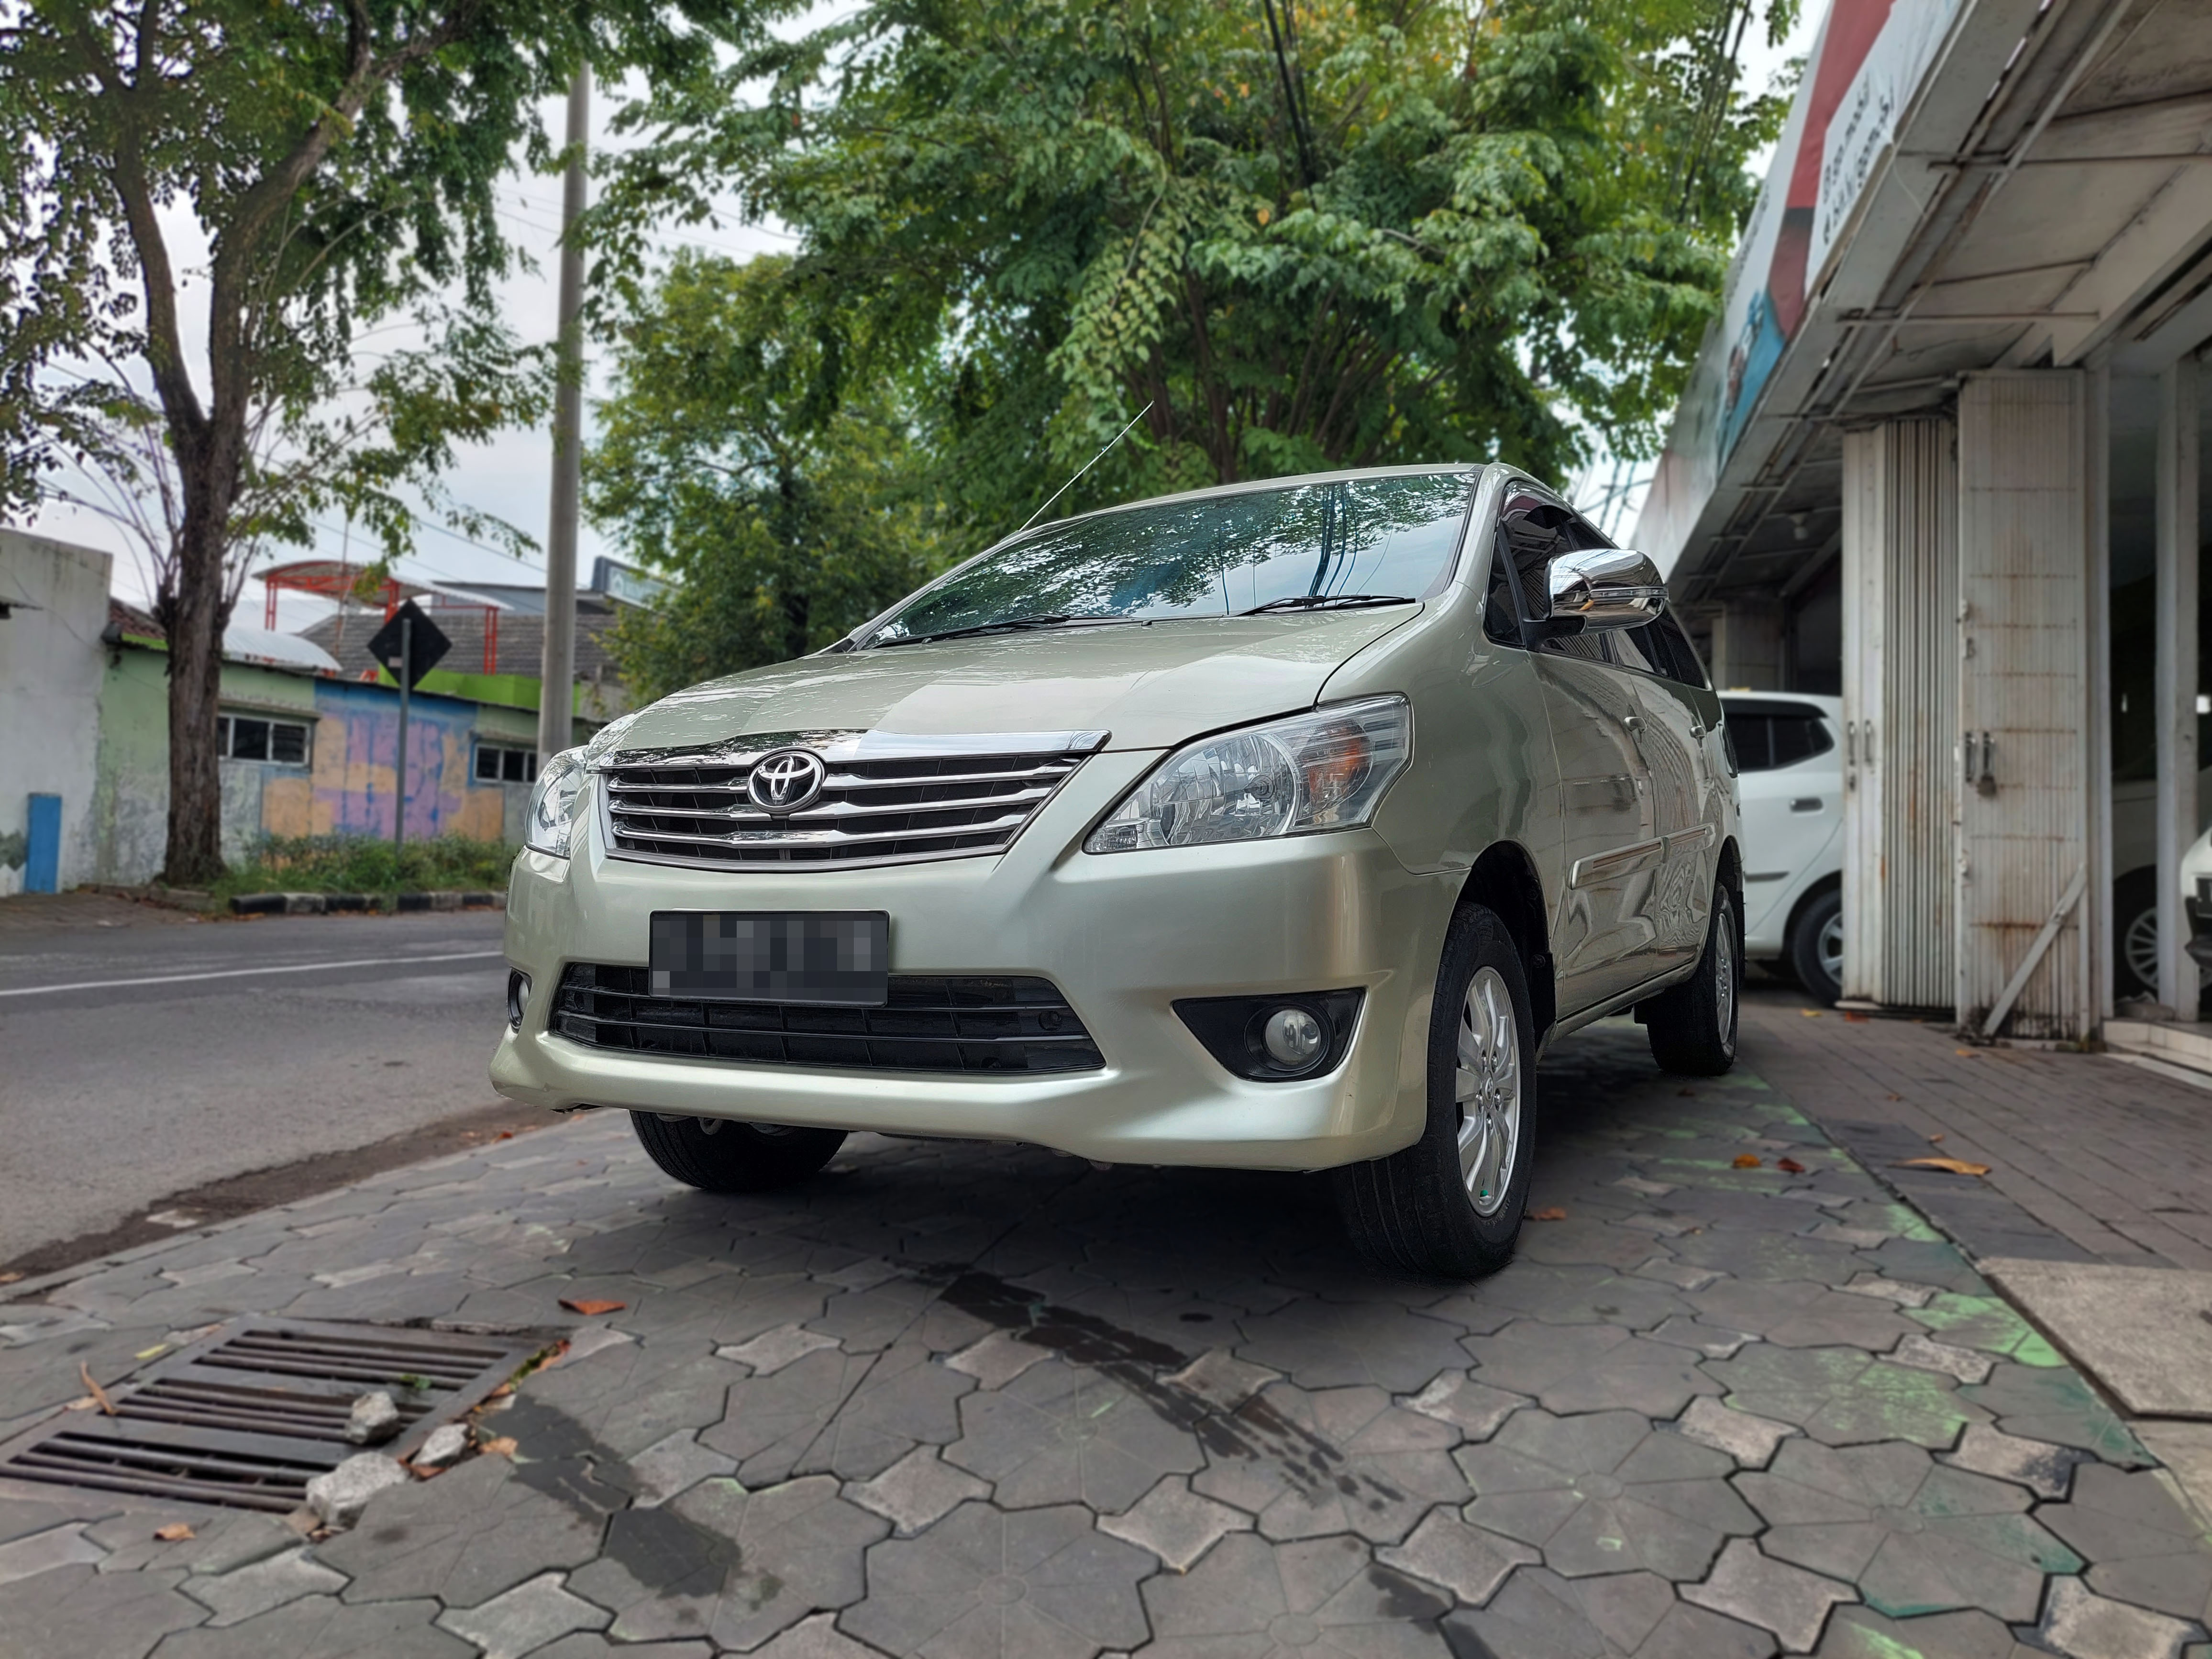 2013 Toyota Kijang Innova 2.0 G AT 2.0 G AT bekas